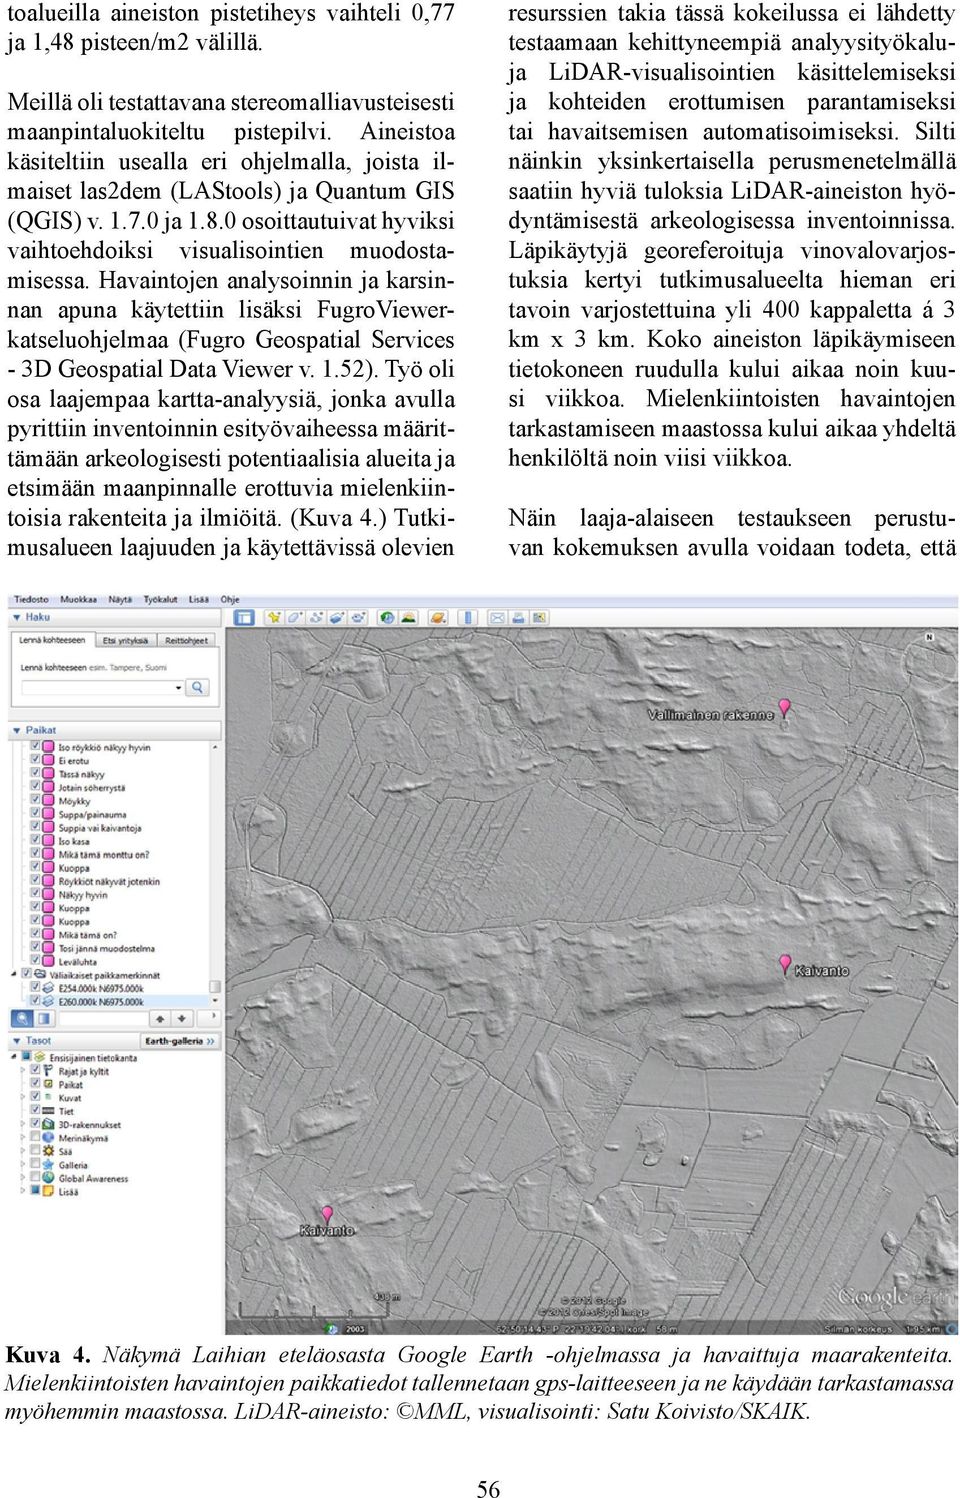 Havaintojen analysoinnin ja karsinnan apuna käytettiin lisäksi FugroViewerkatseluohjelmaa (Fugro Geospatial Services - 3D Geospatial Data Viewer v. 1.52).